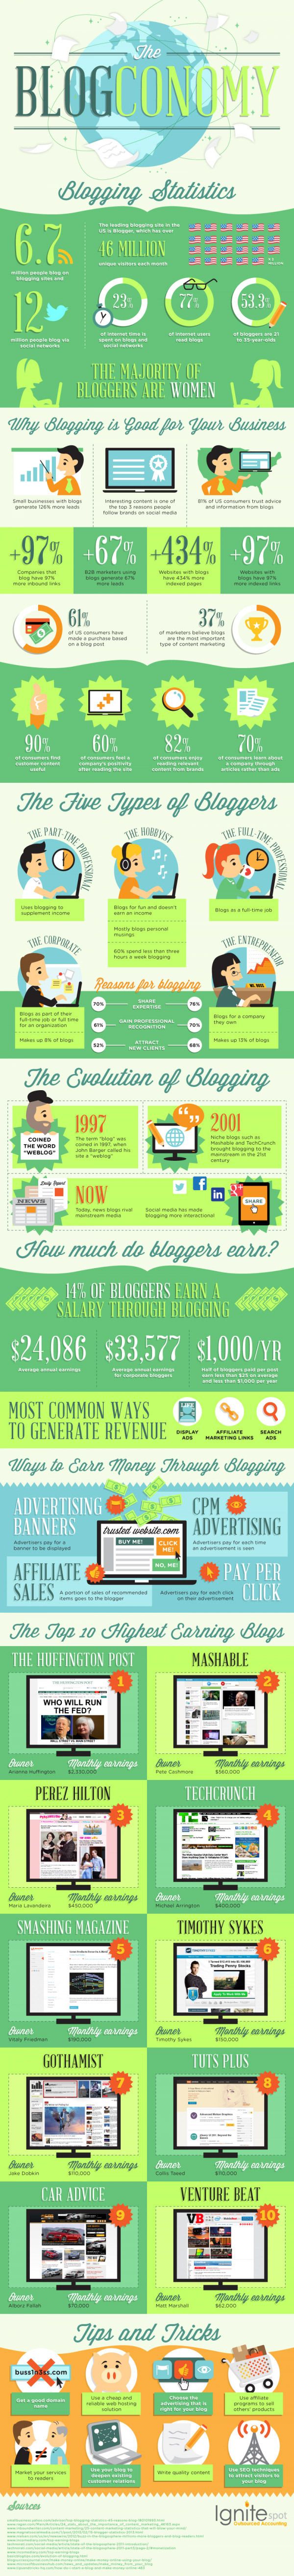 Original blog the blogconomy infographic